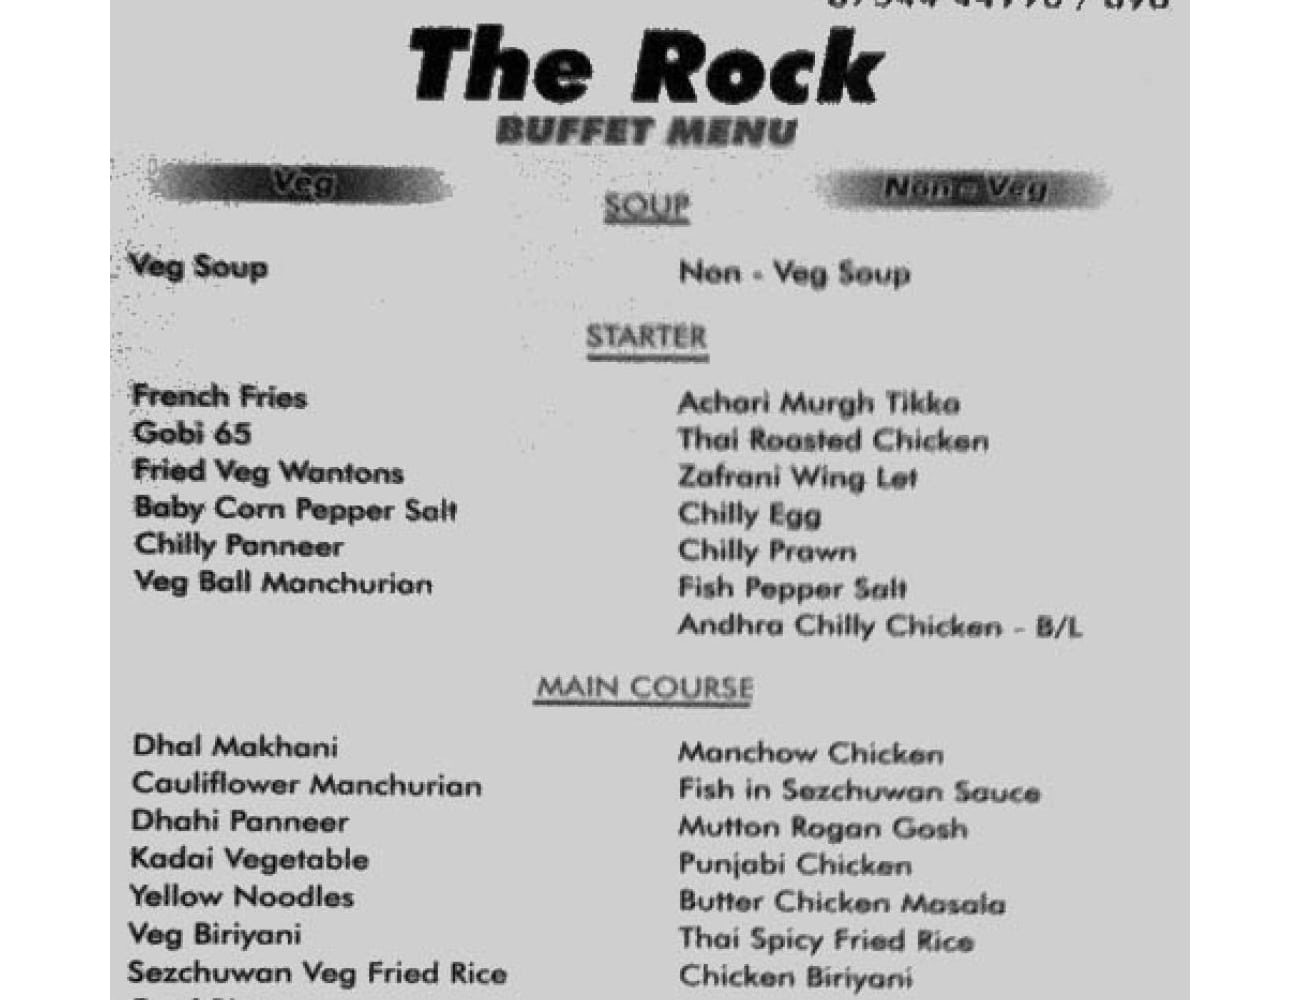 The Rock Restaurant Buffet Menu